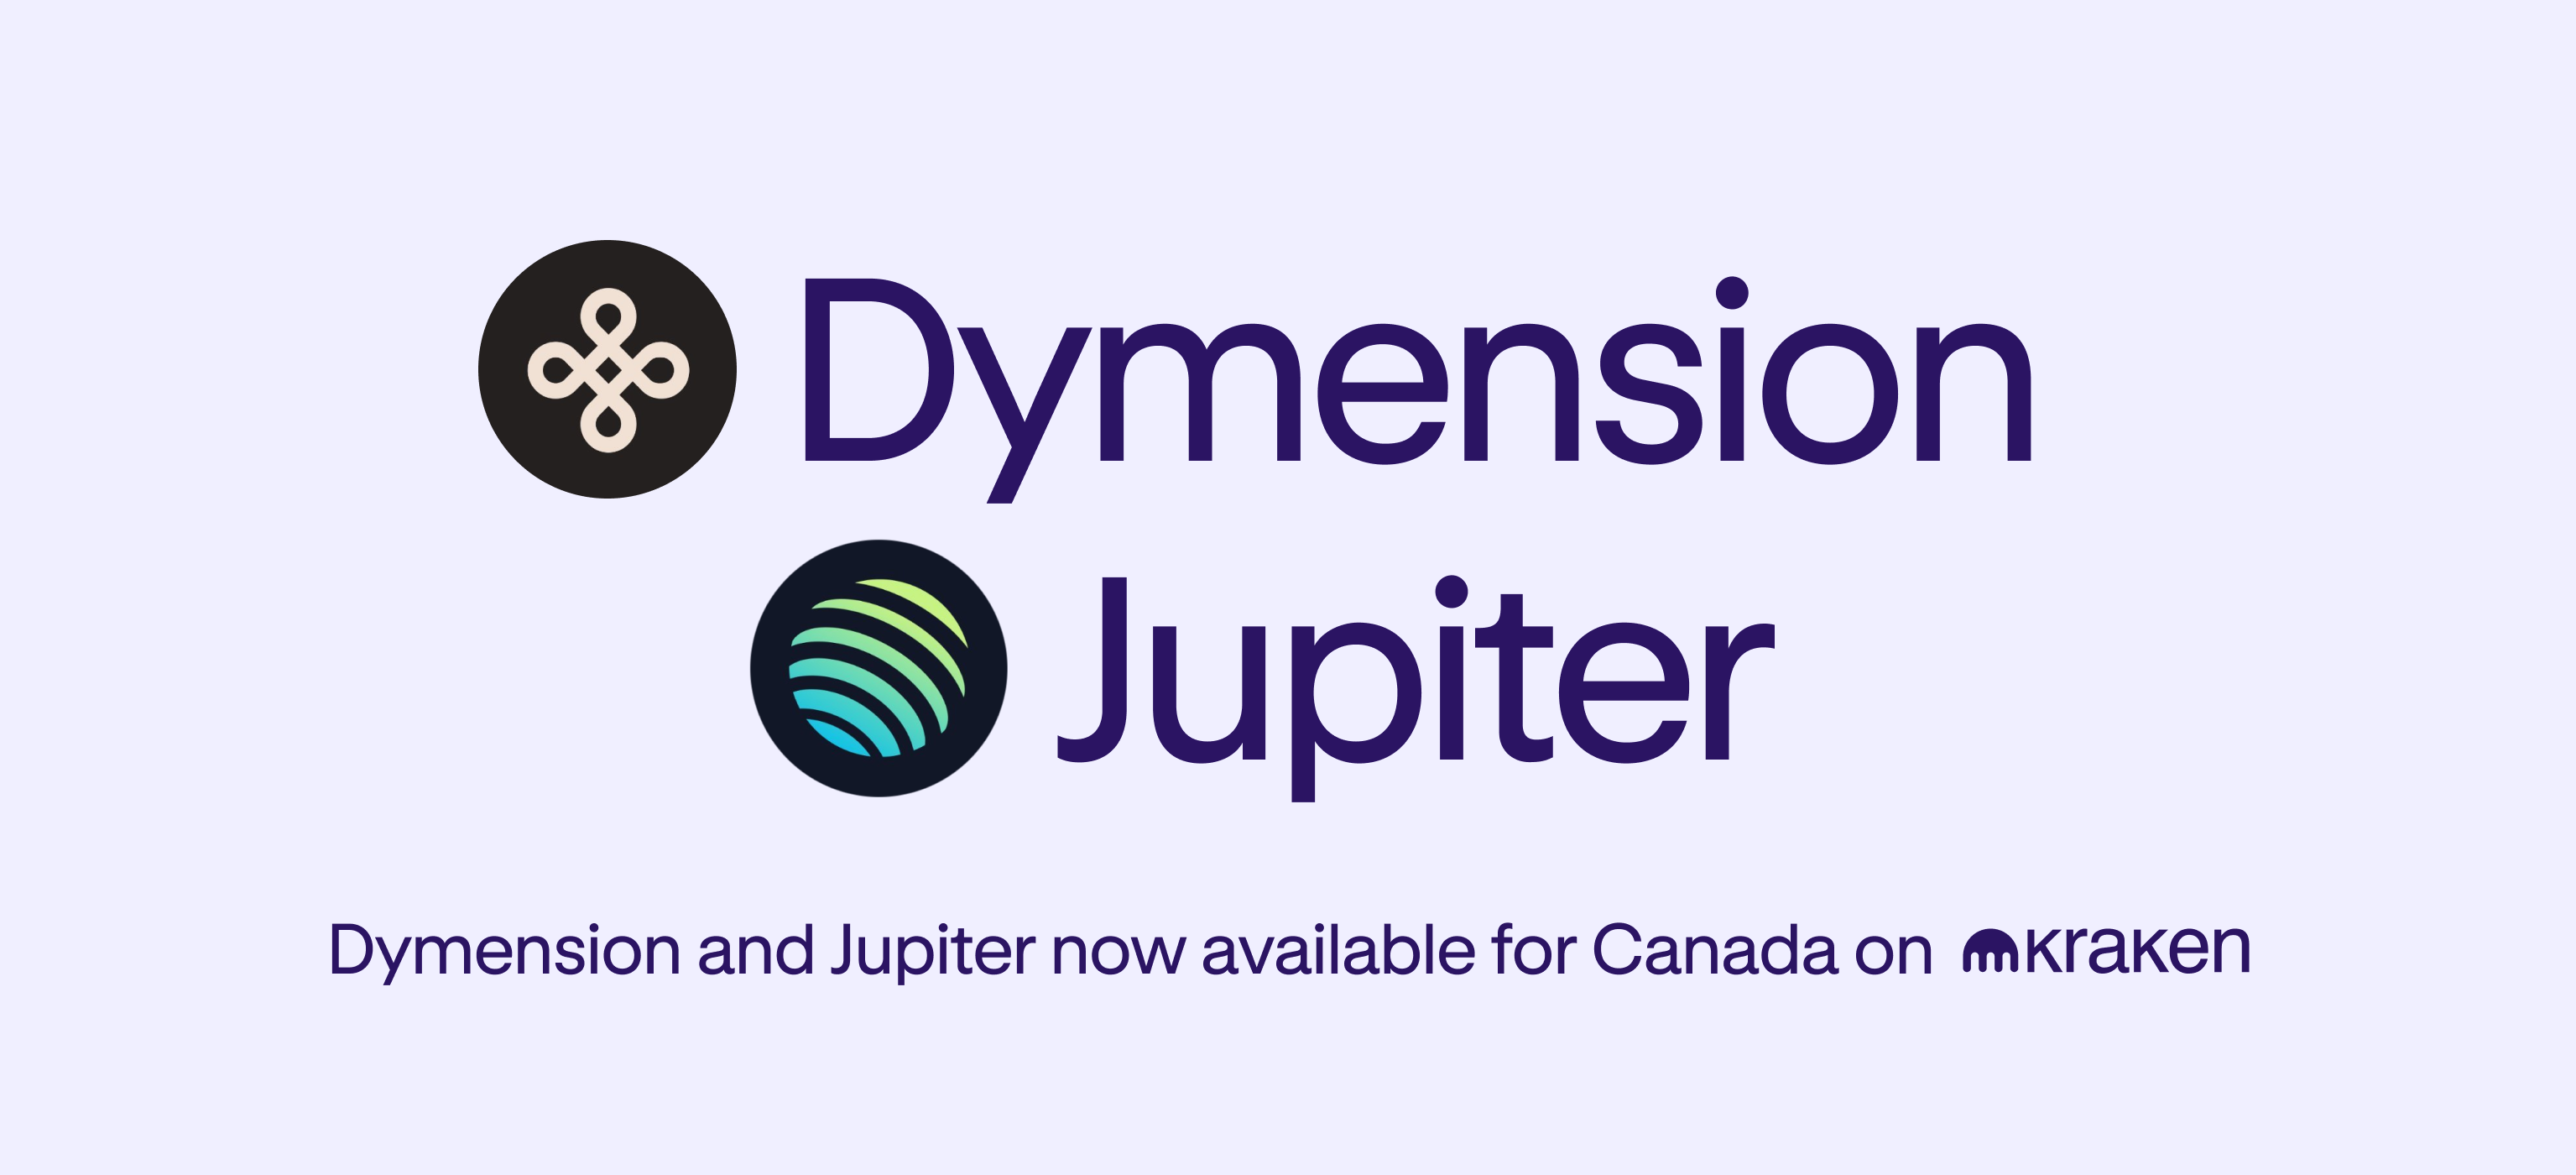 Handel med Dymension (DYM) og Jupiter (JUP) starter nå i Canada